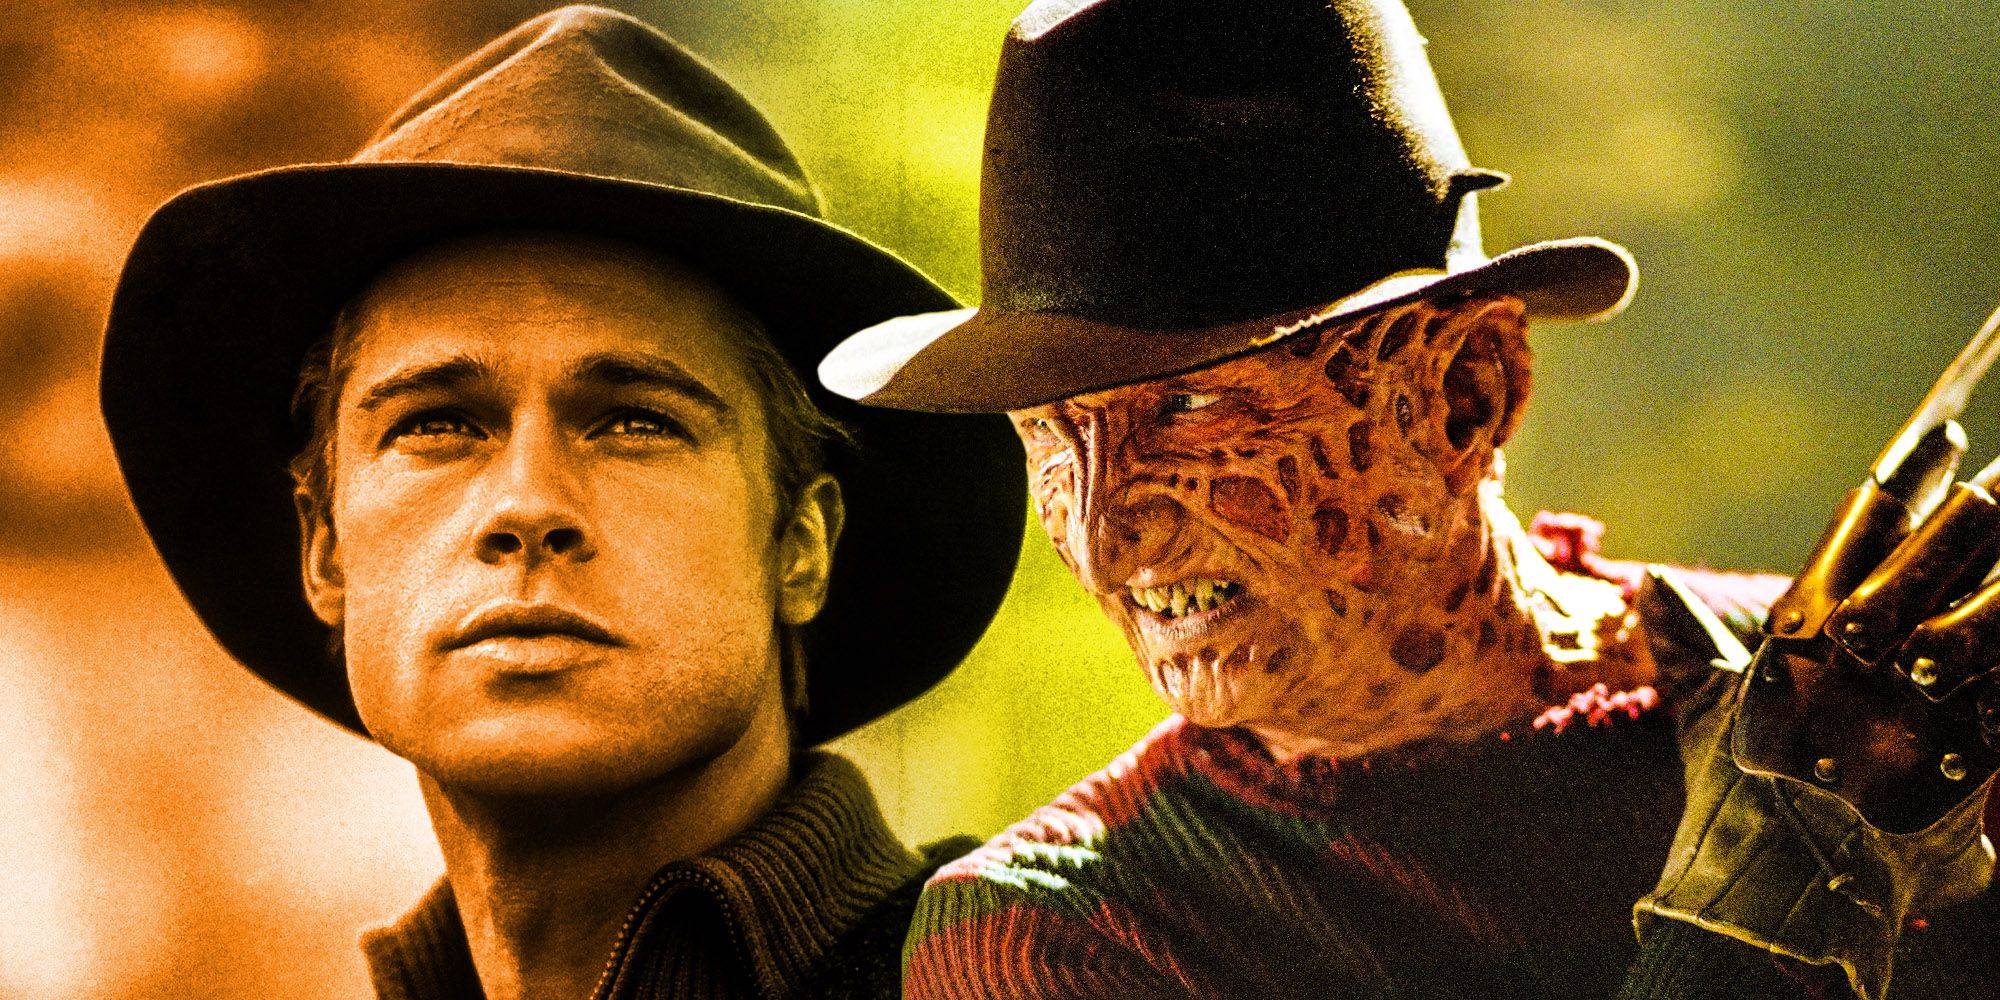 Explicación del episodio de Freddy's Nightmares de Brad Pitt (¿muere?)